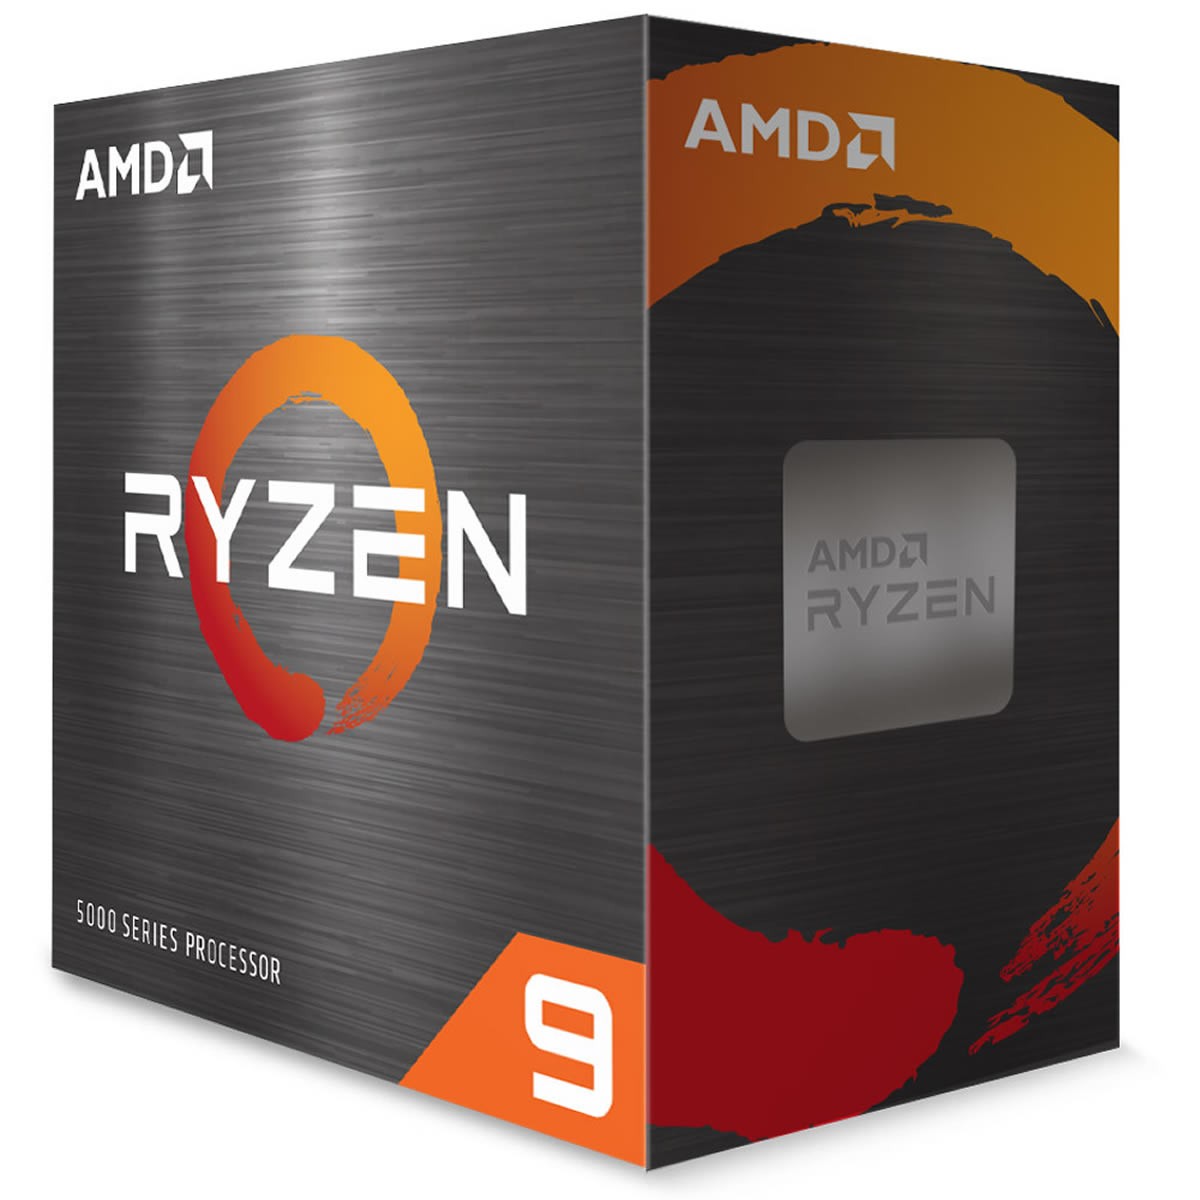 Des AMD RYZEN 9 5900X disponibles chez Topachat au prix de 699 euros avec Far Cry 6 offert